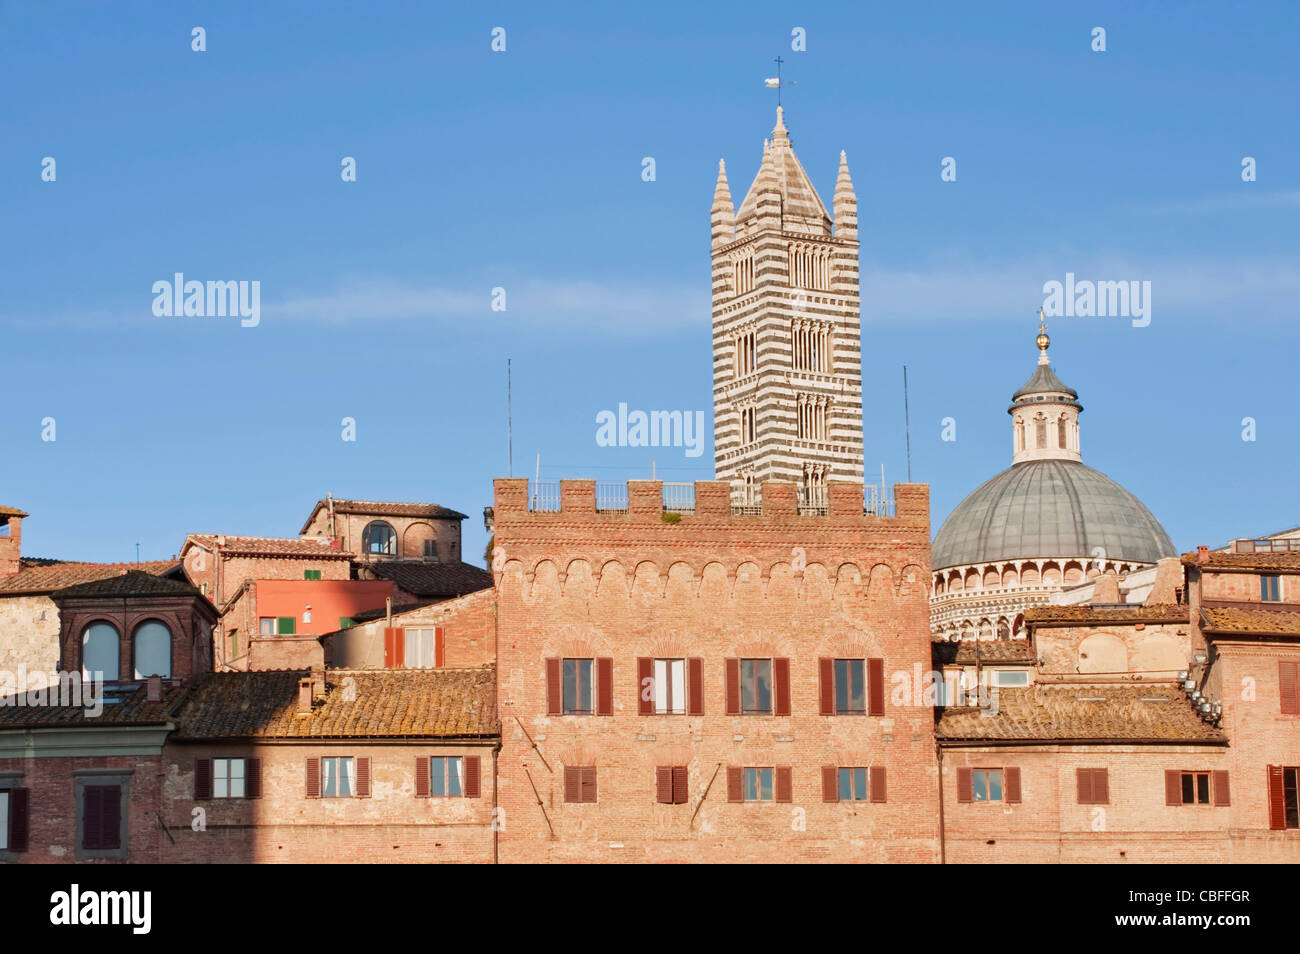 Europa, Italien, Toskana, Siena, Piazza del Campo mit Dom von Siena im Hintergrund Stockfoto